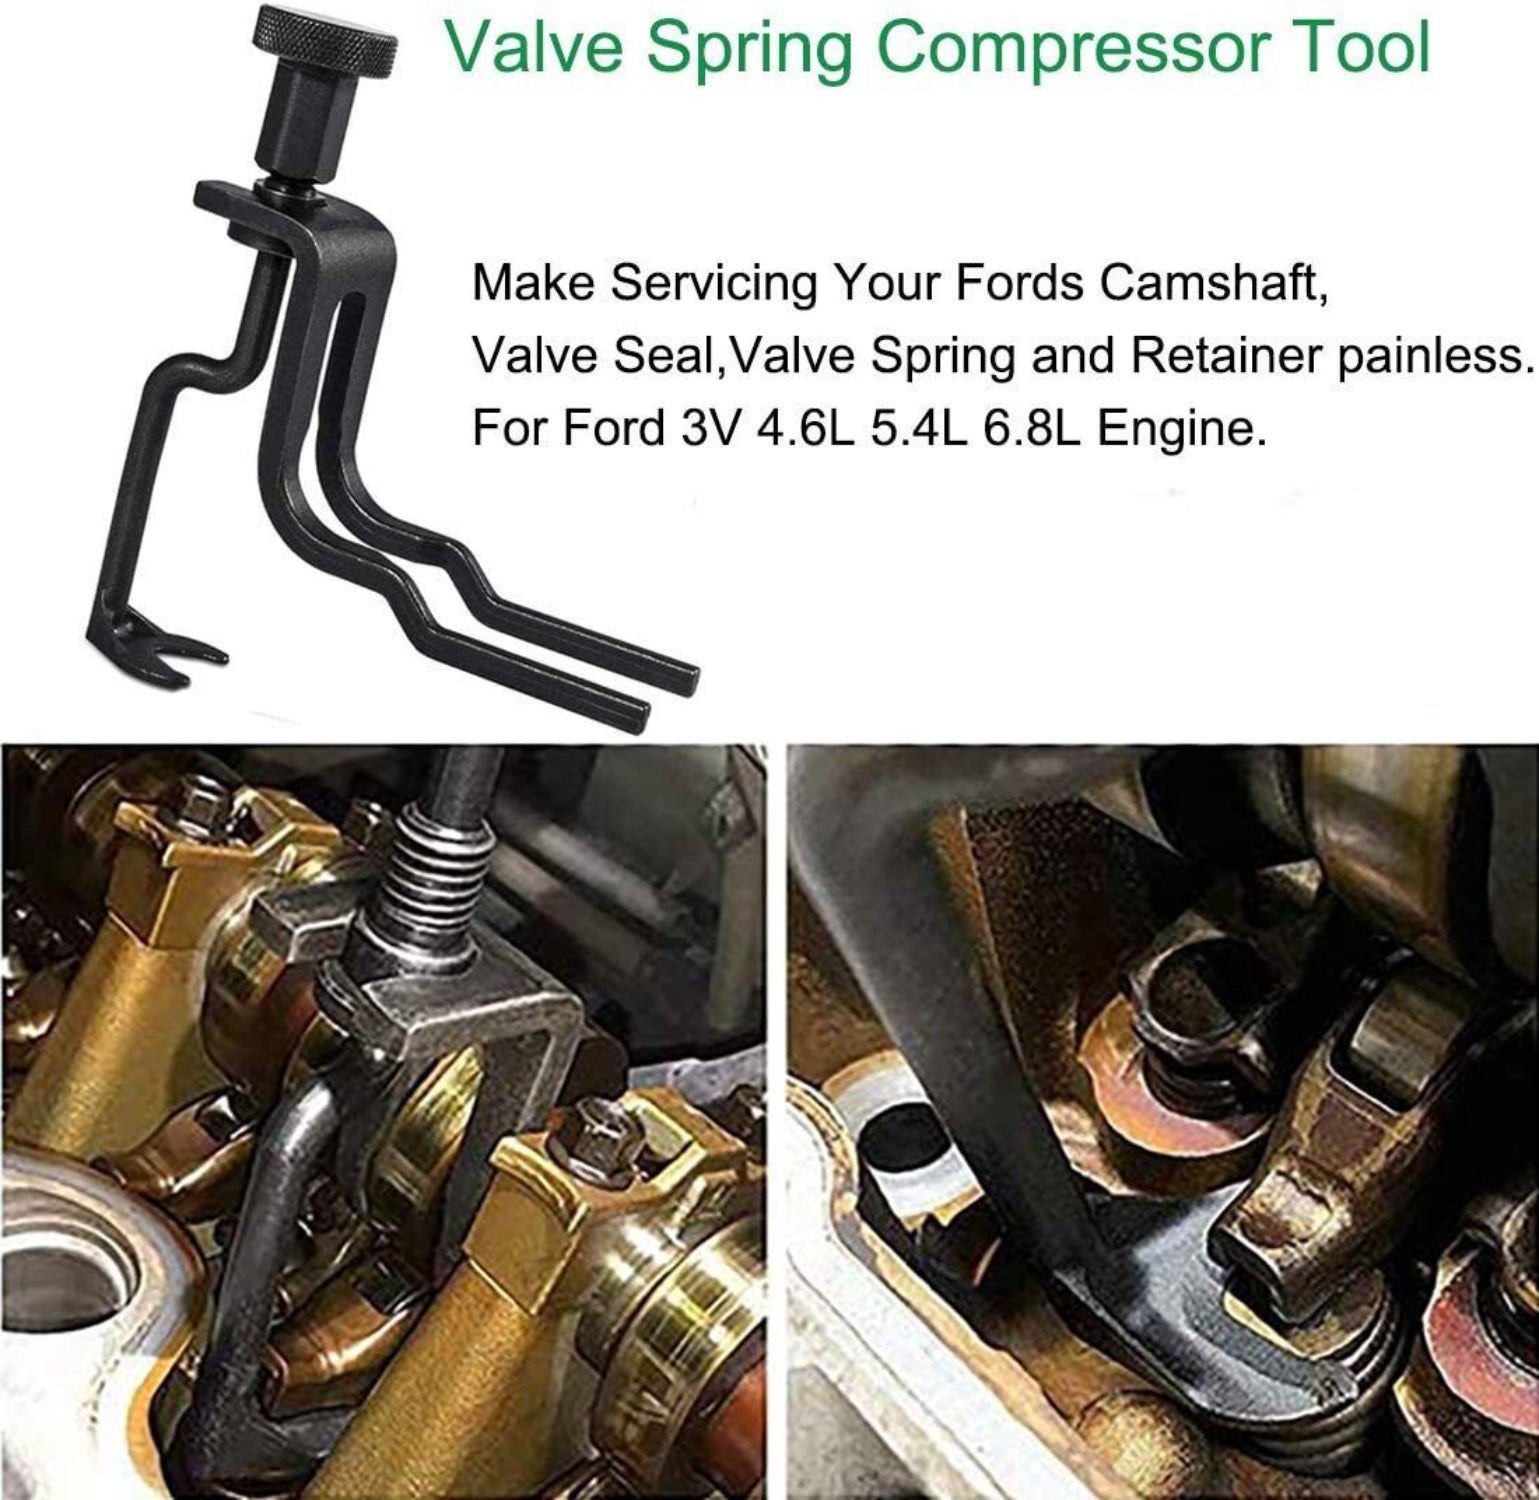 Engines Repair Tool Kit - Valve Spring Compressor for Ford 4.6L/5.4L/6.8L 3V